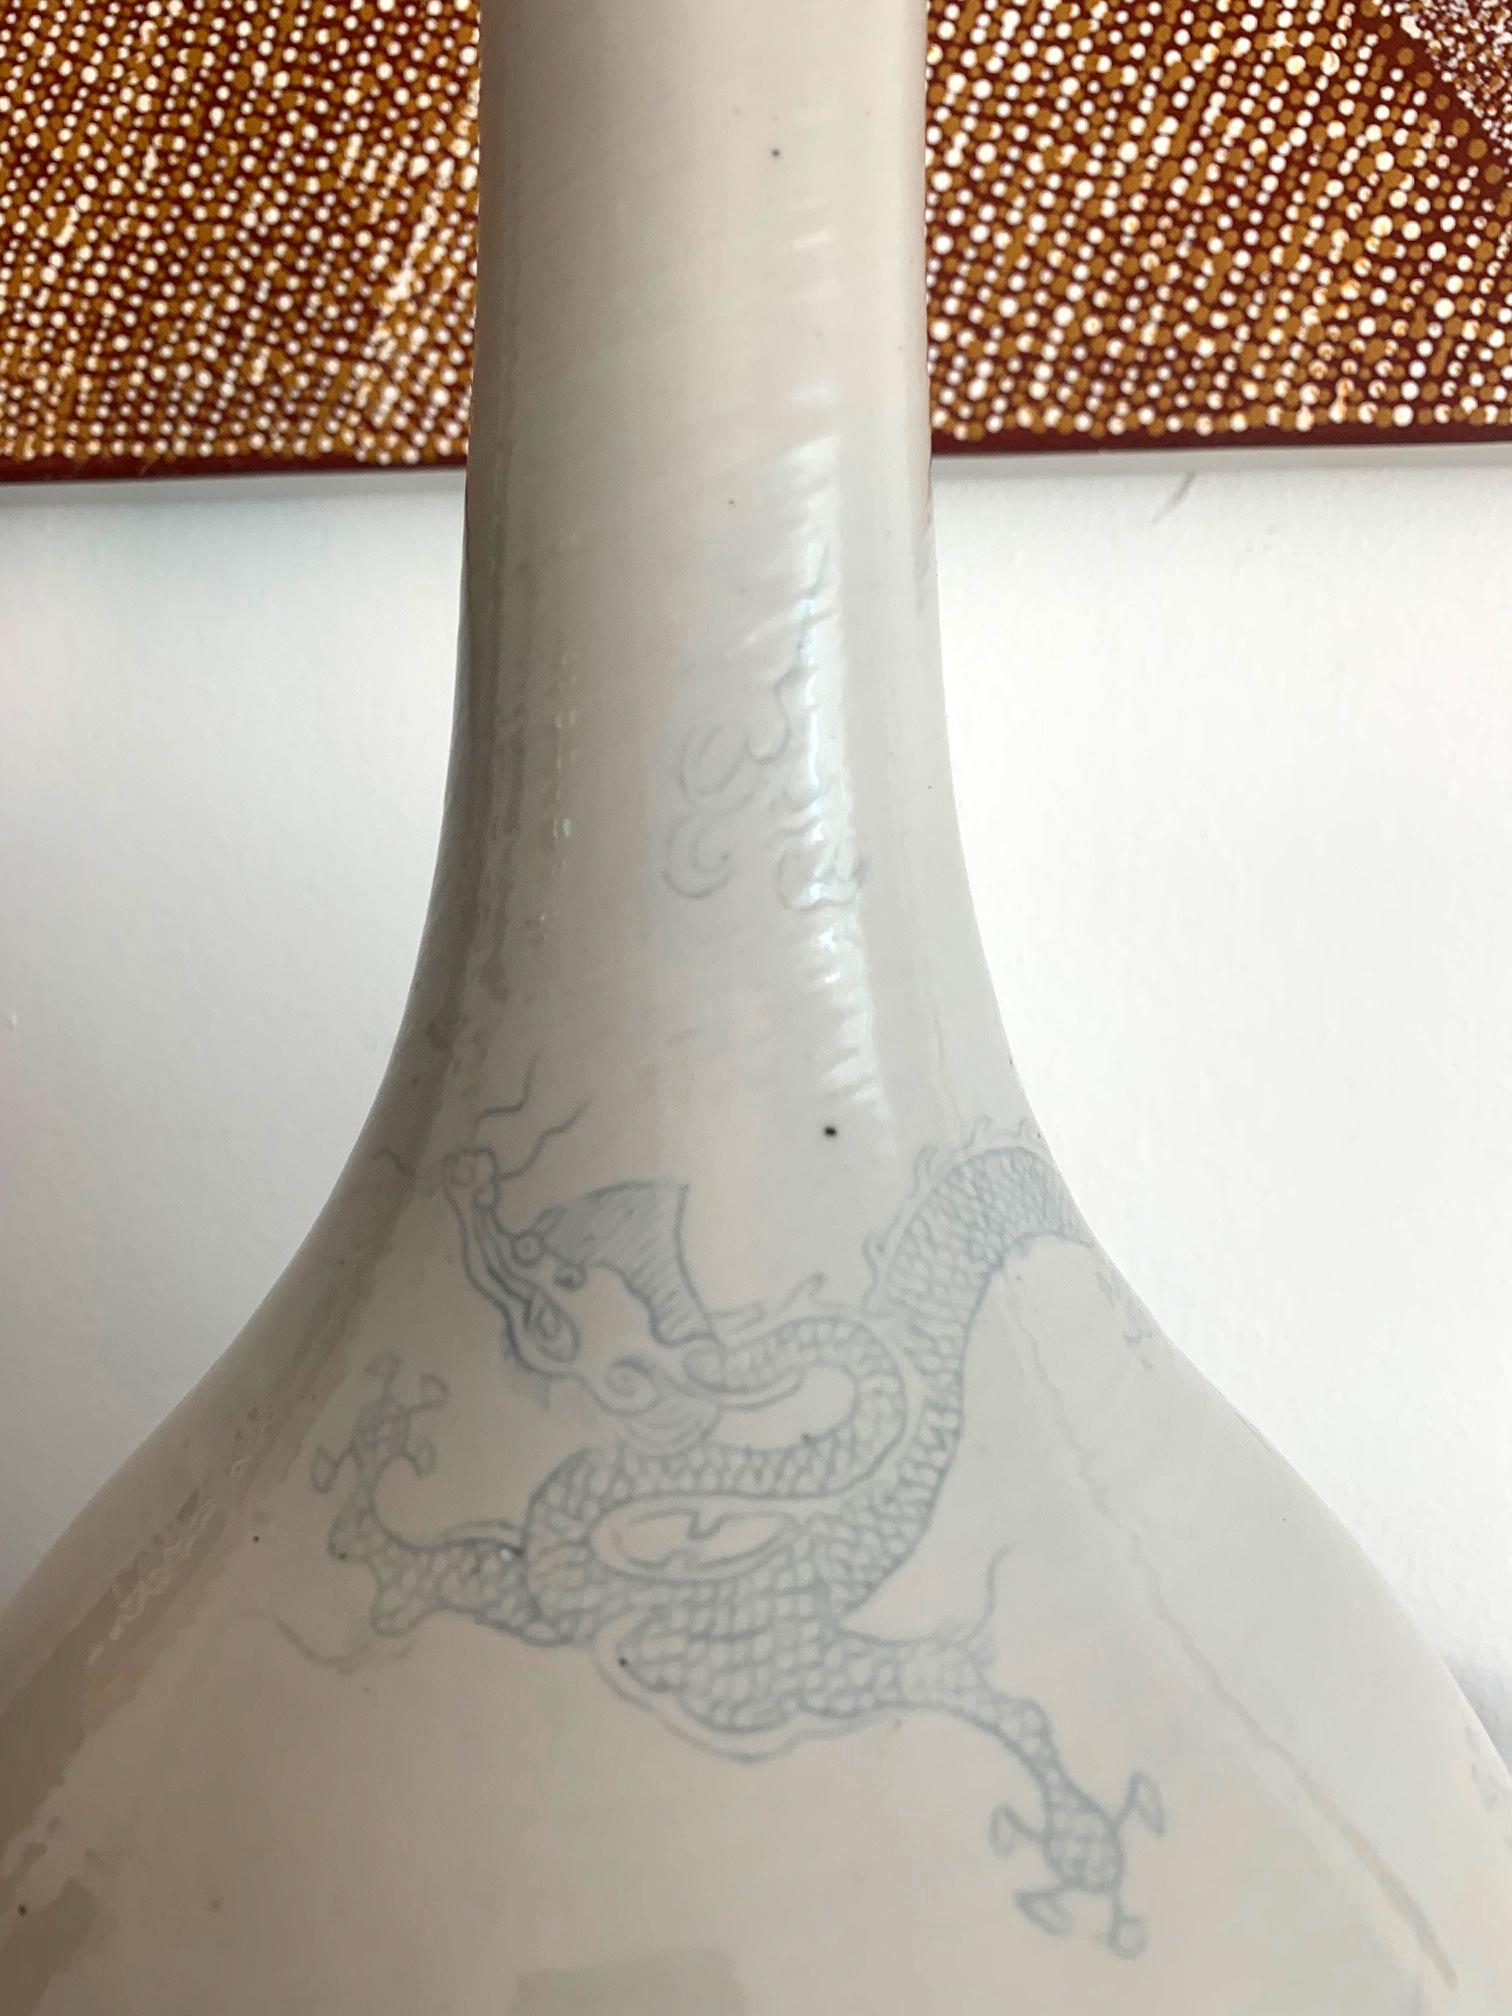 Large Korean White Dragon Vase Joseon Period 1